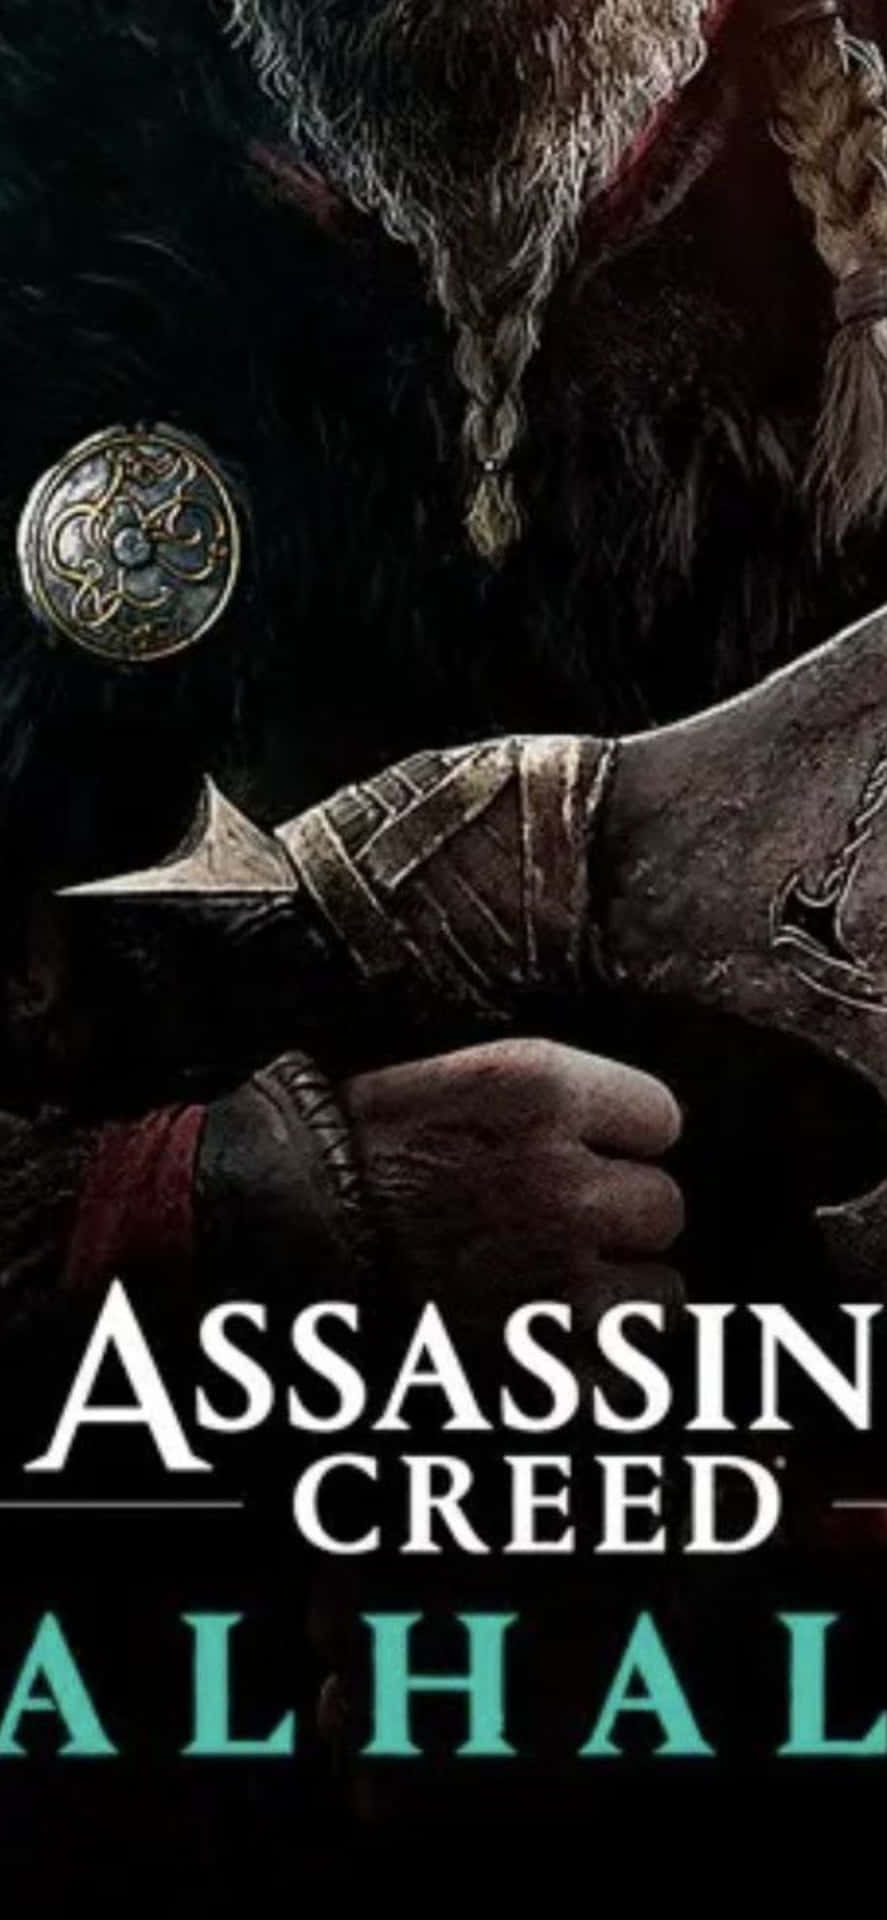 Iphonexs Bakgrund Med Assassin's Creed Valhalla-speltitelplakat.